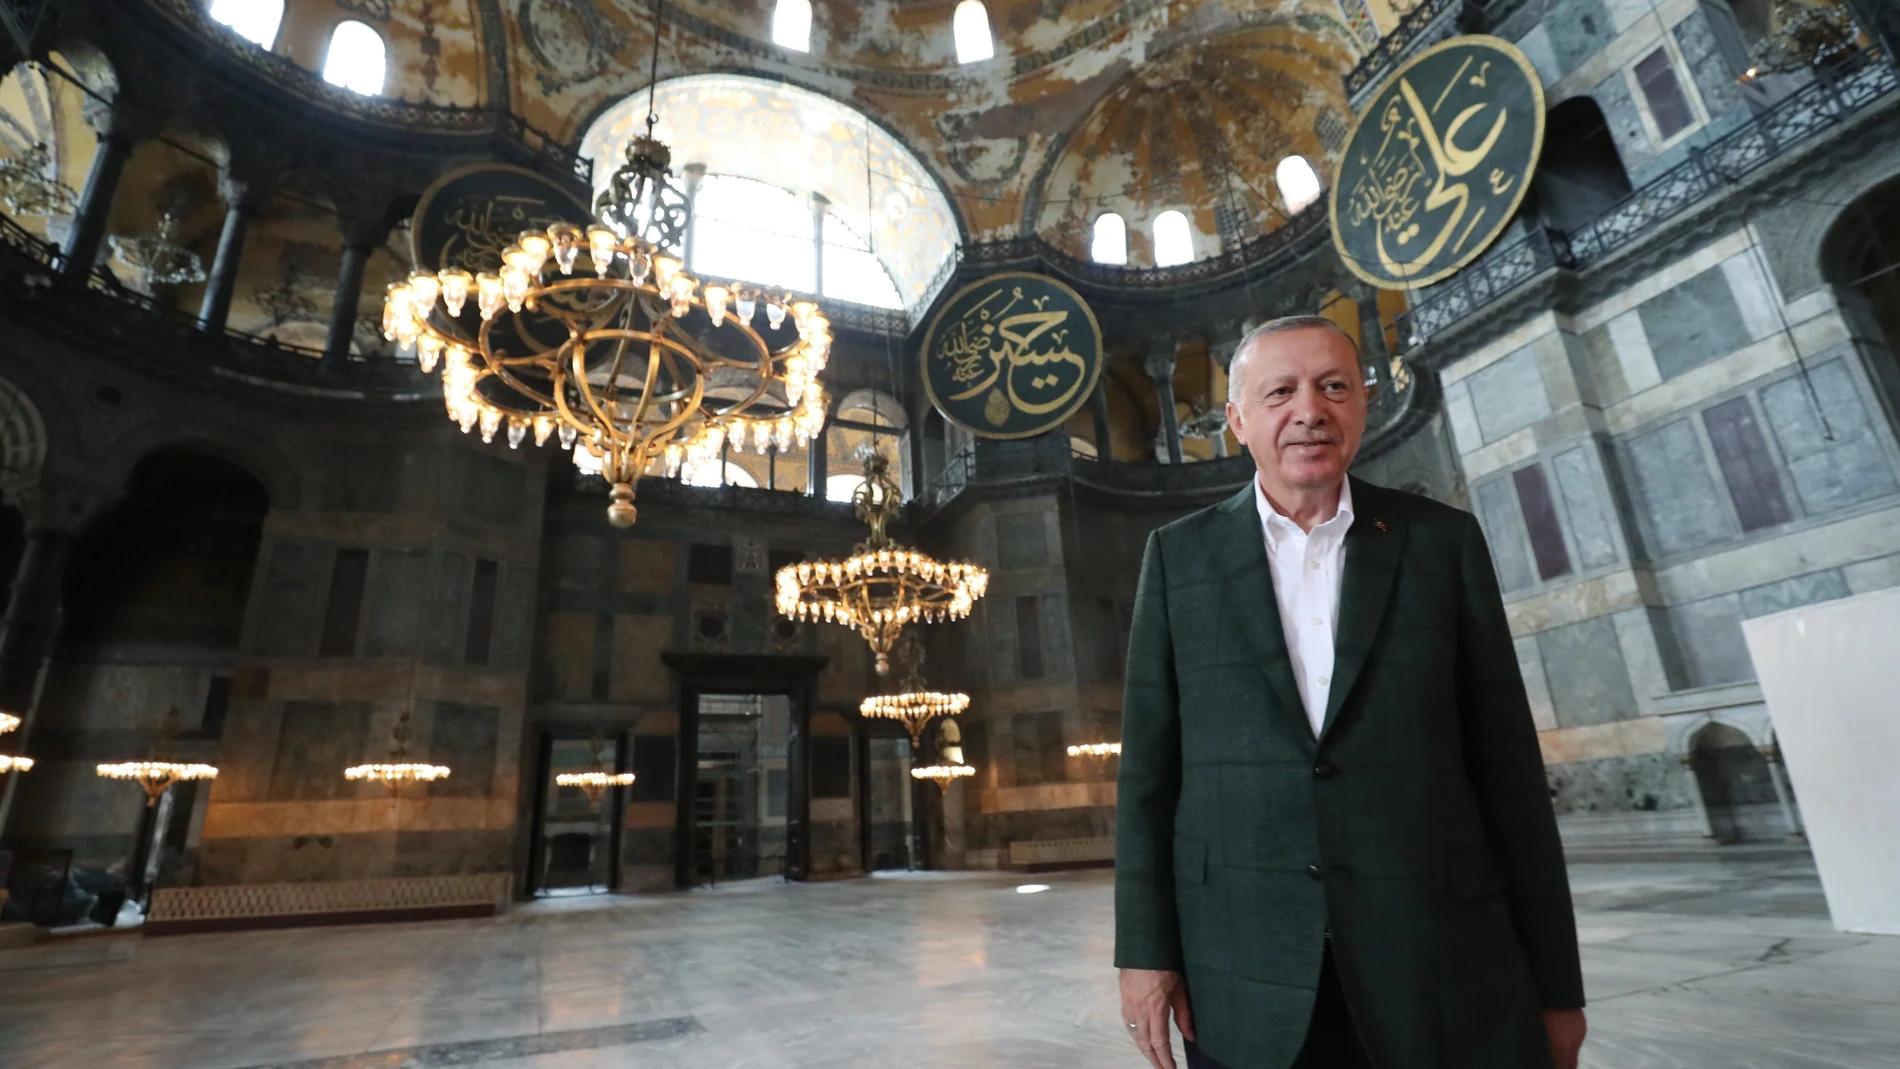 El presidente turco, Recep Tayyip Erdogan, en la antigua Basílica de Santa Sofía de Estambul